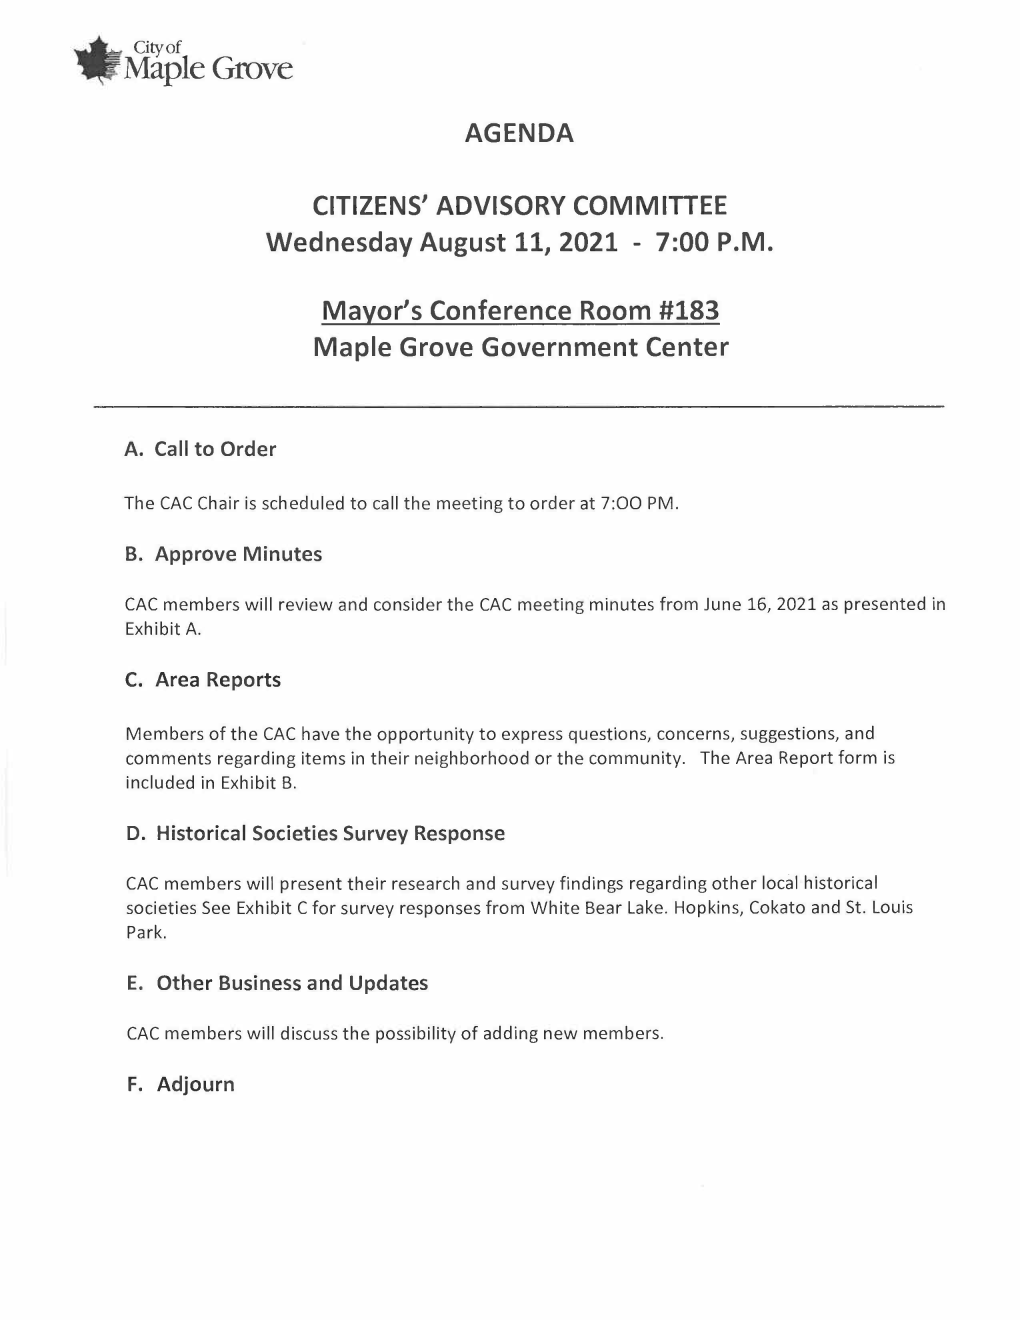 Citizens Advisory Committee Regular Meeting Agenda